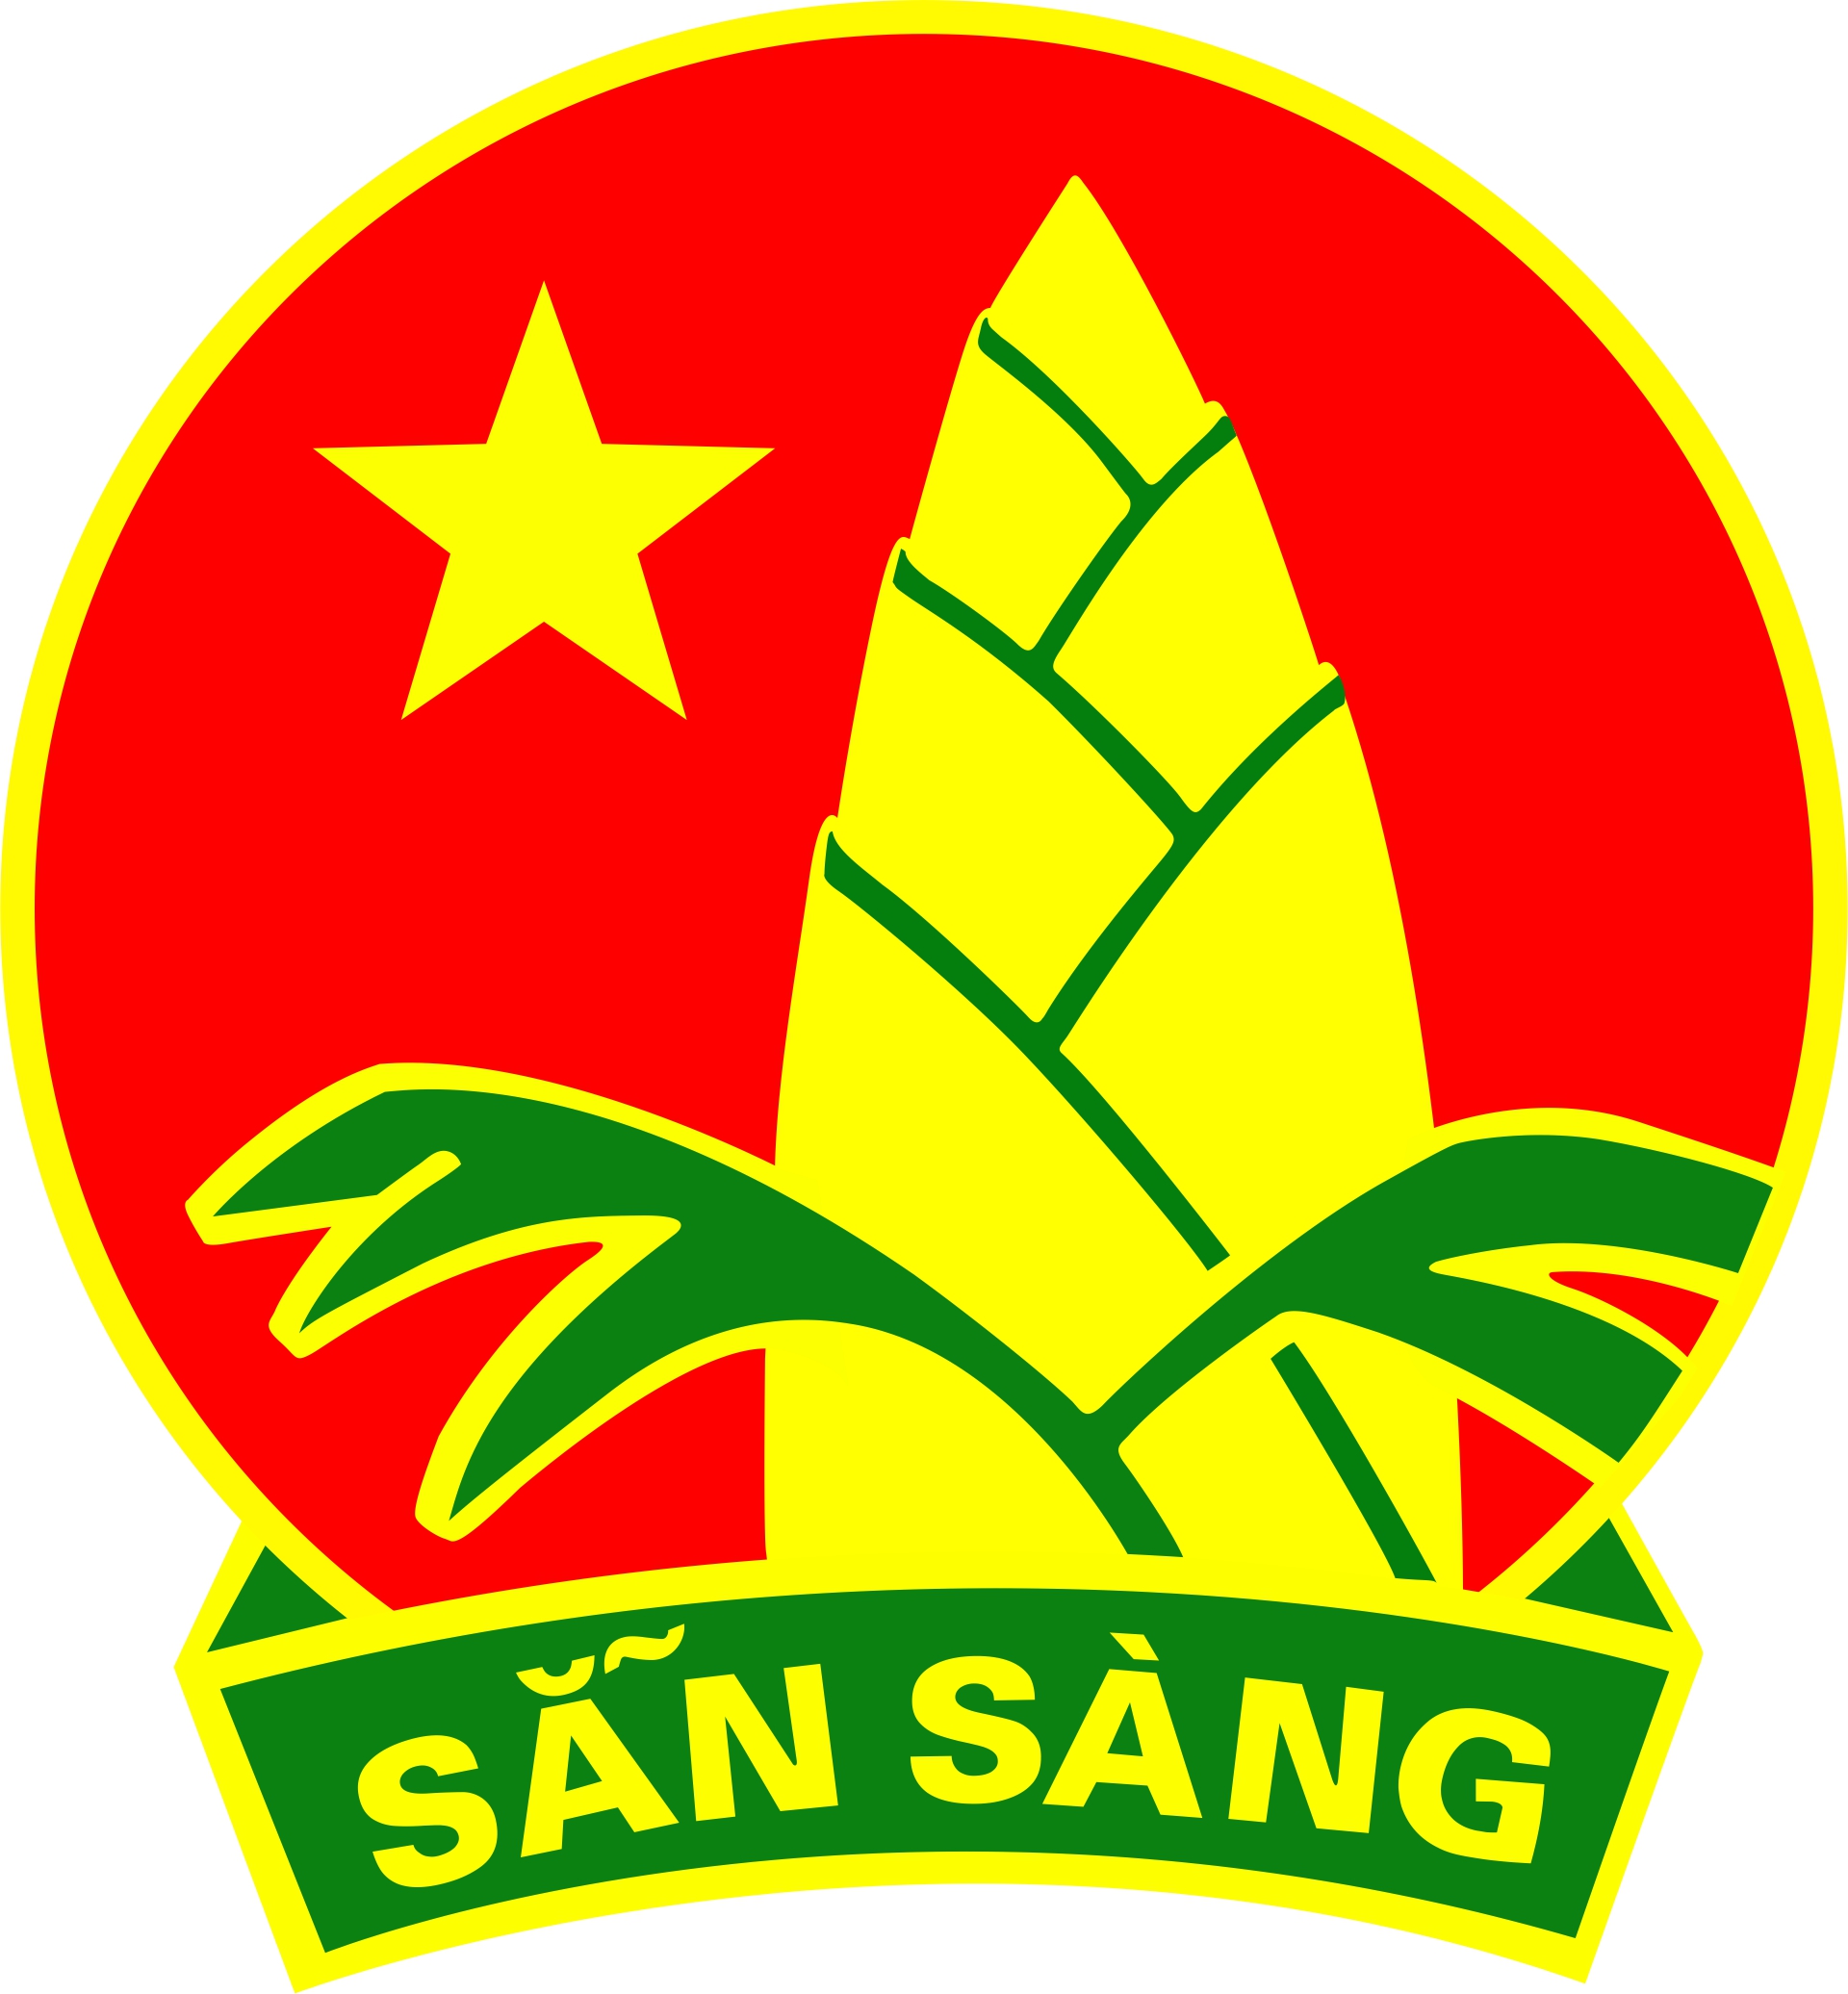 Kế hoạch Tổ chức Liên hoan Đội tuyên truyền măng non các Nhà Thiếu nhi, Trung tâm hoạt động Thanh Thiếu nhi khu vực Đồng bằng sông Cửu Long, năm 2016